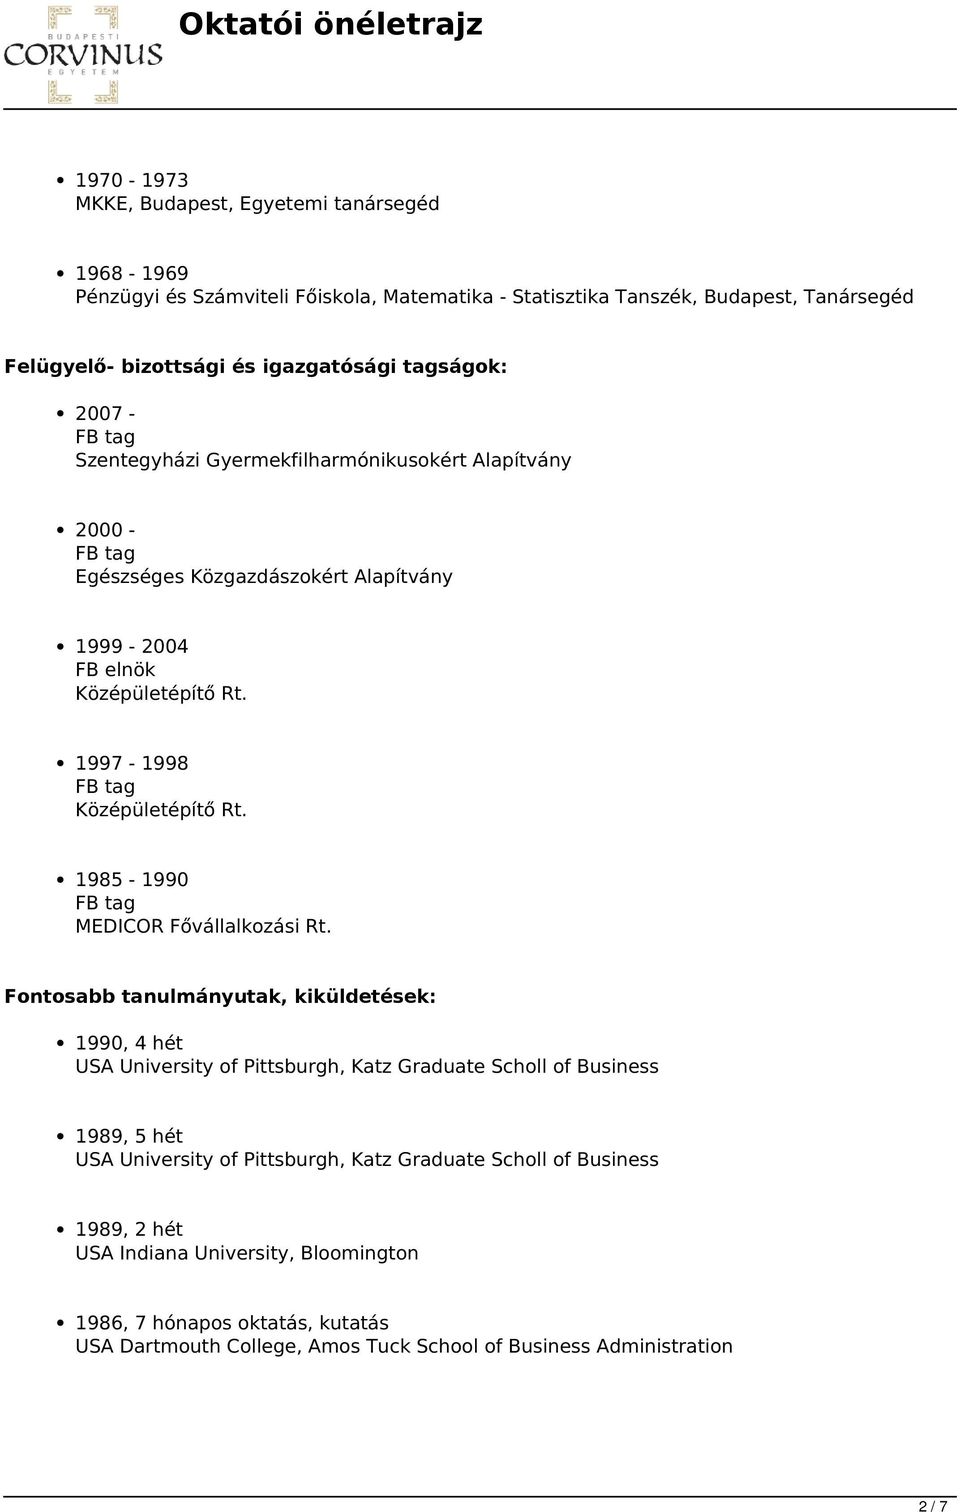 1985-1990 MEDICOR Fővállalkozási Rt.